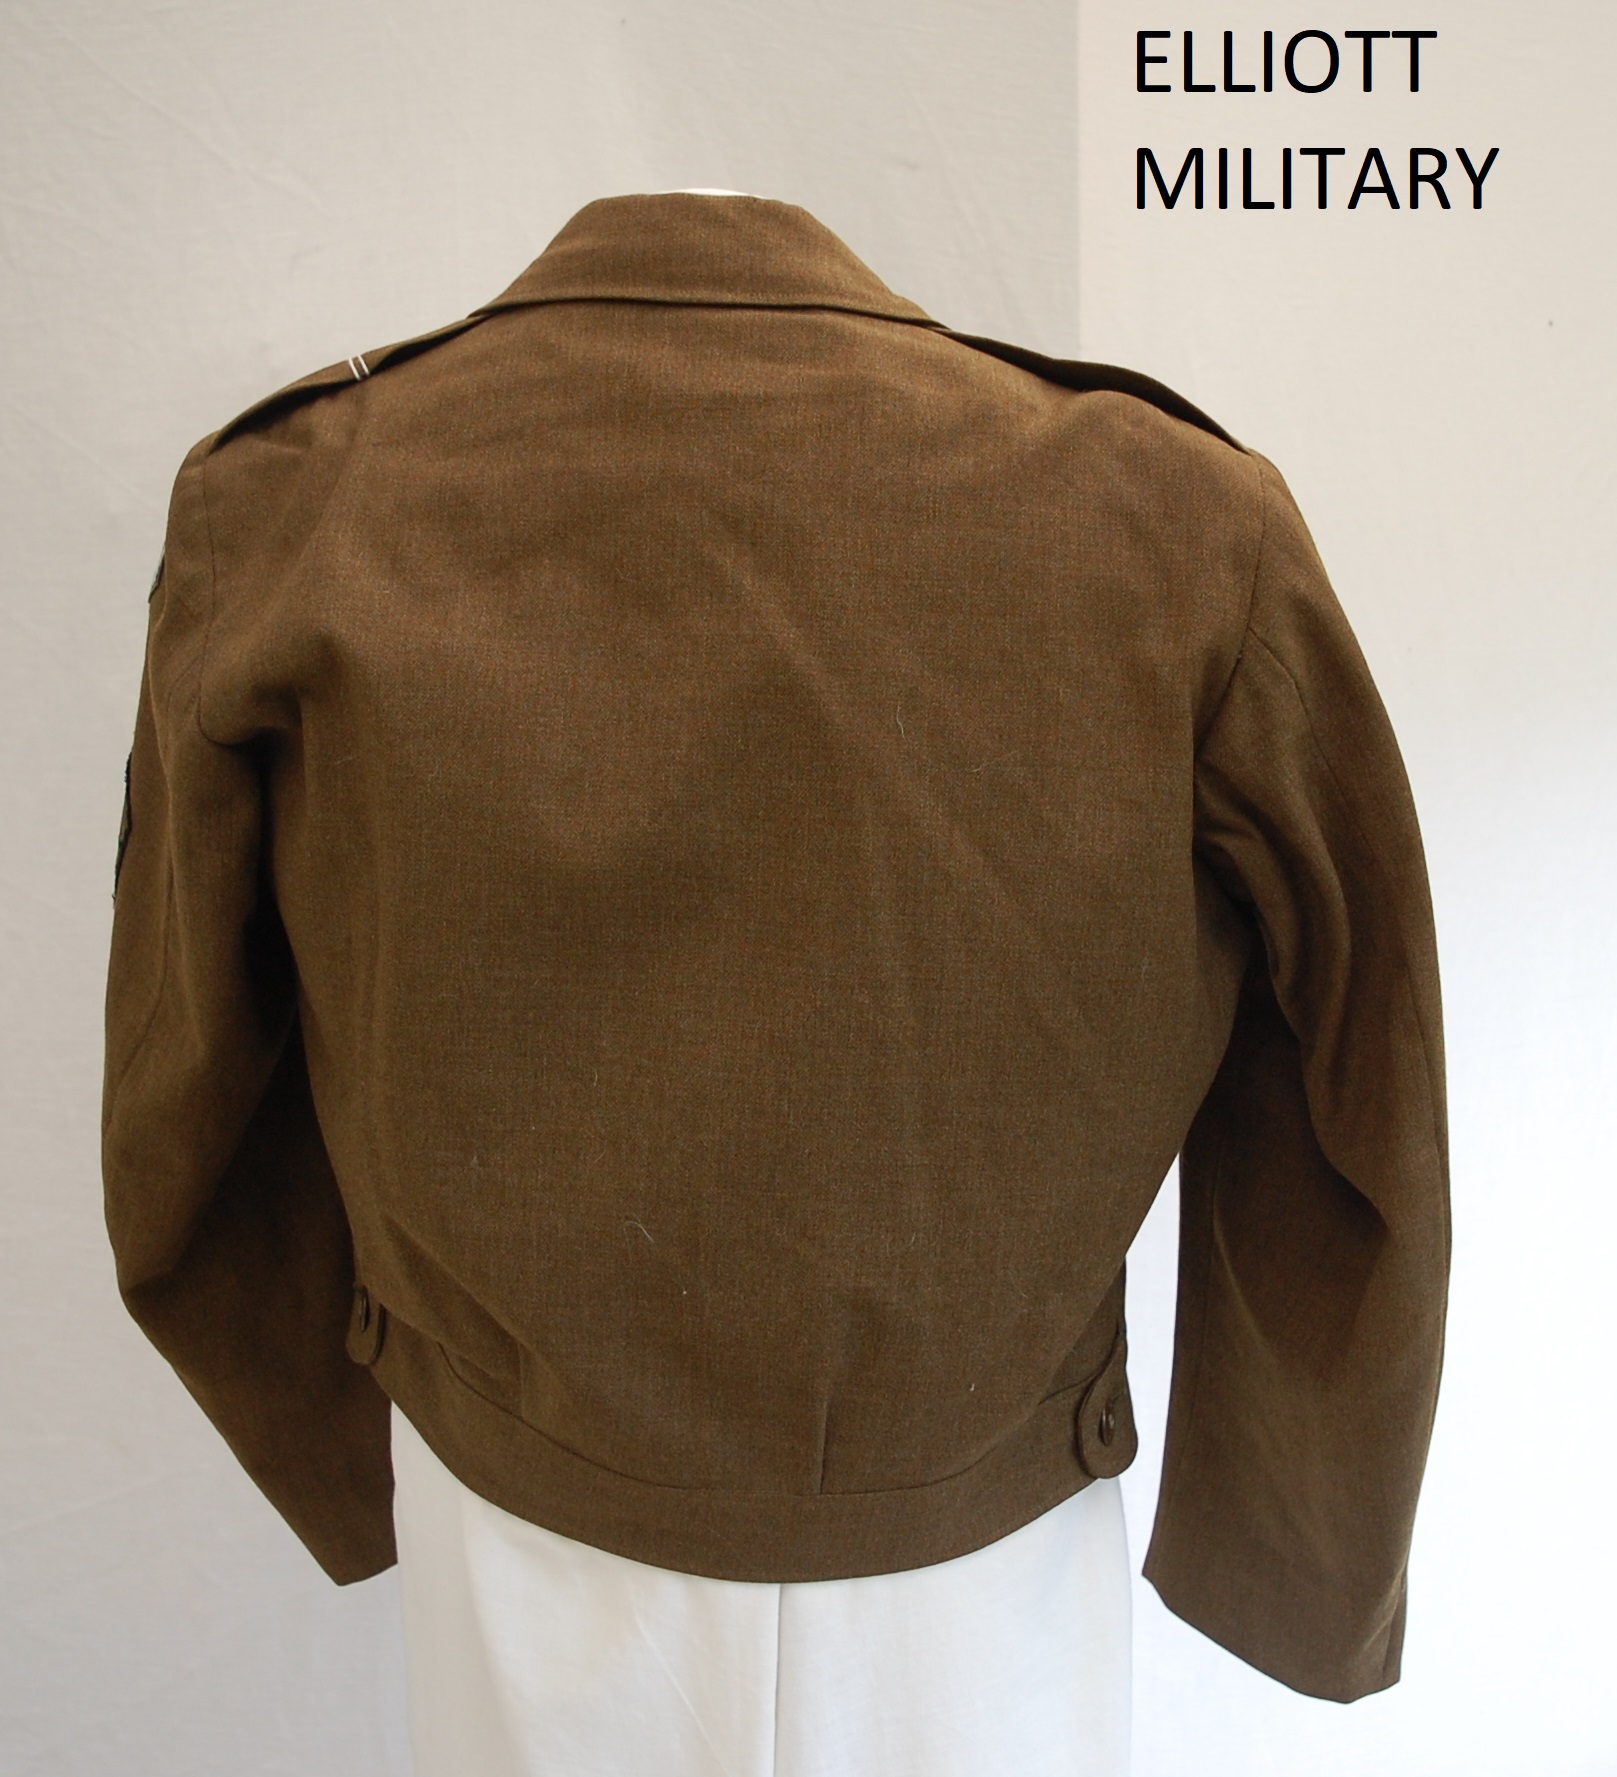 US M-1950 O.D. Wool Jacket - Elliott Military